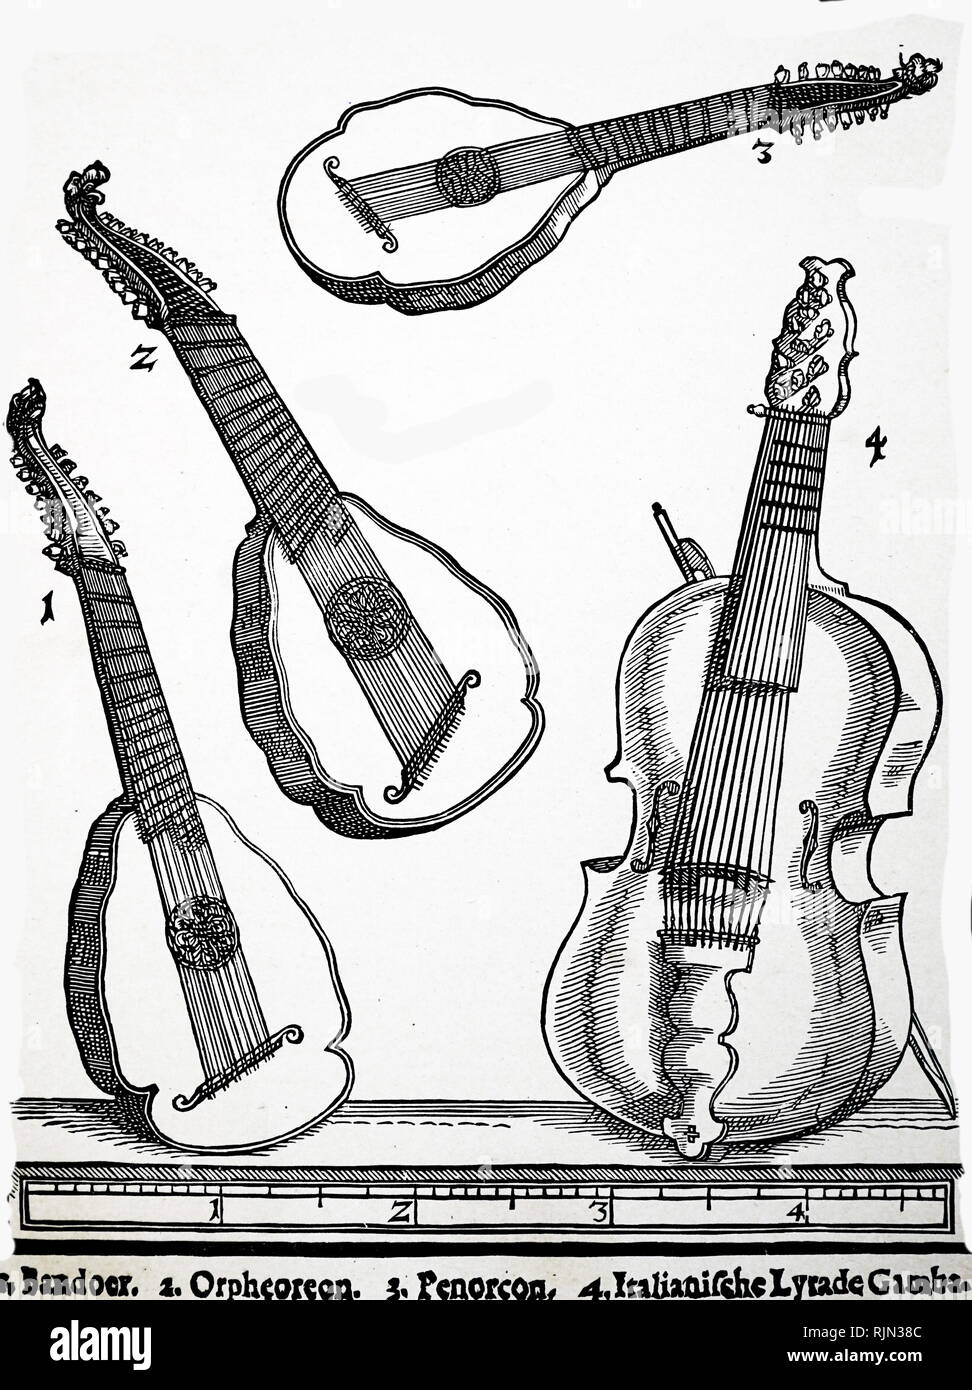 Illustrazione che mostra il vecchio gli strumenti a corda 1: Bandoer 2: Orpheoreon 3: Penorcon 4: Italiano Lyra da Gamba. Da Michael Praetorius 'Syntagma Musicum" 1615-20 di Basilea Foto Stock